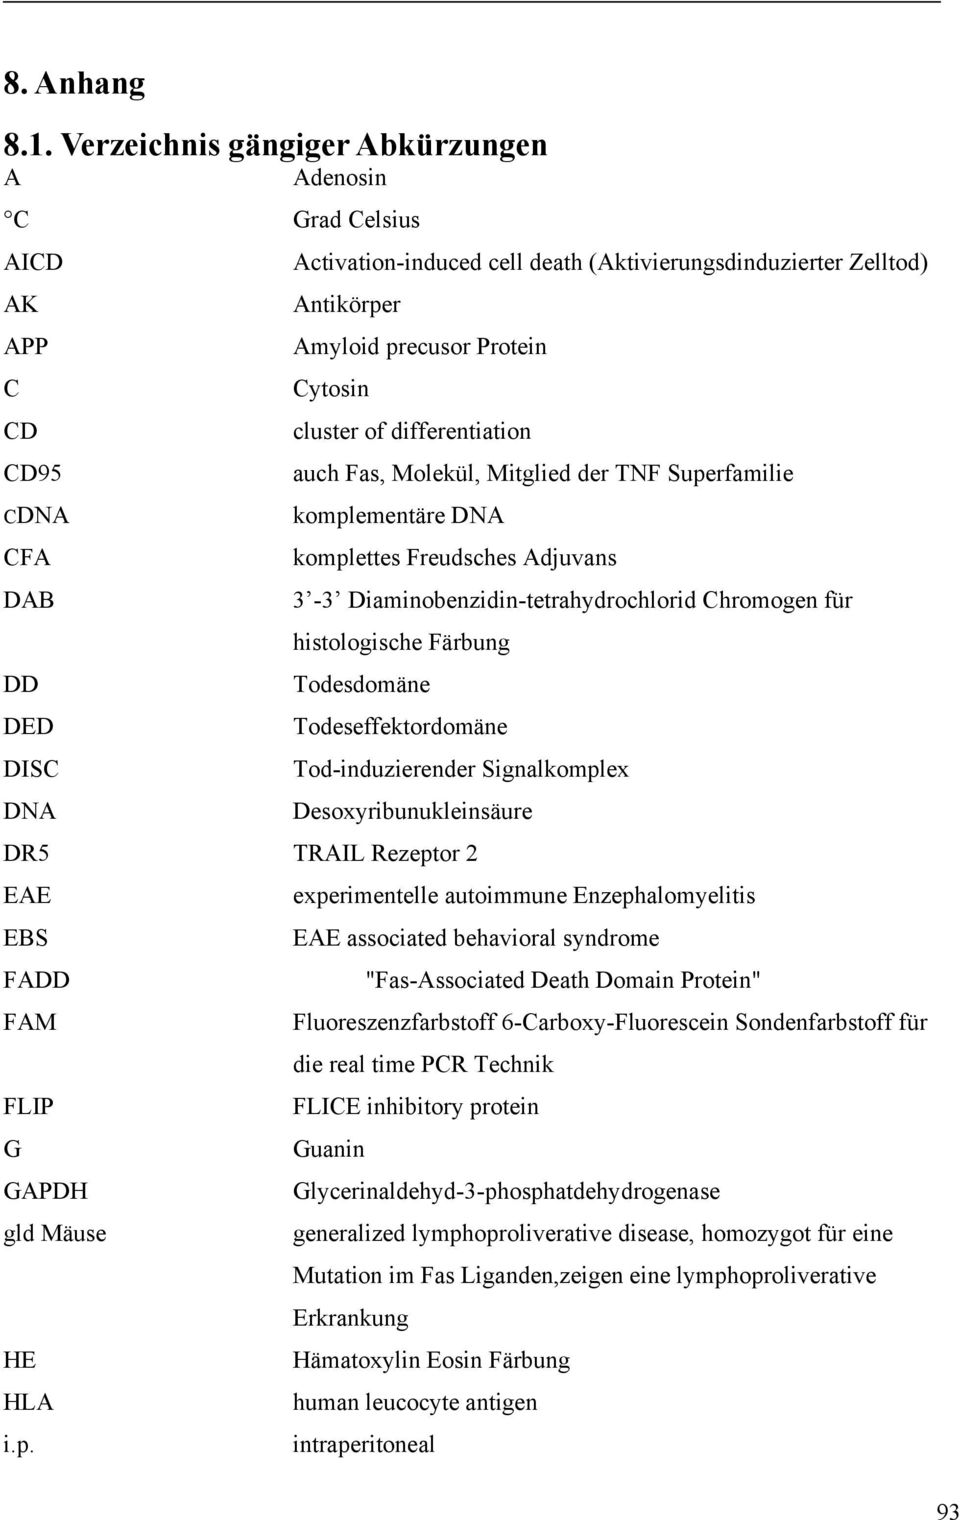 differentiation CD95 auch Fas, Molekül, Mitglied der TNF Superfamilie CDNA komplementäre DNA CFA komplettes Freudsches Adjuvans DAB 3-3 Diaminobenzidin-tetrahydrochlorid Chromogen für histologische